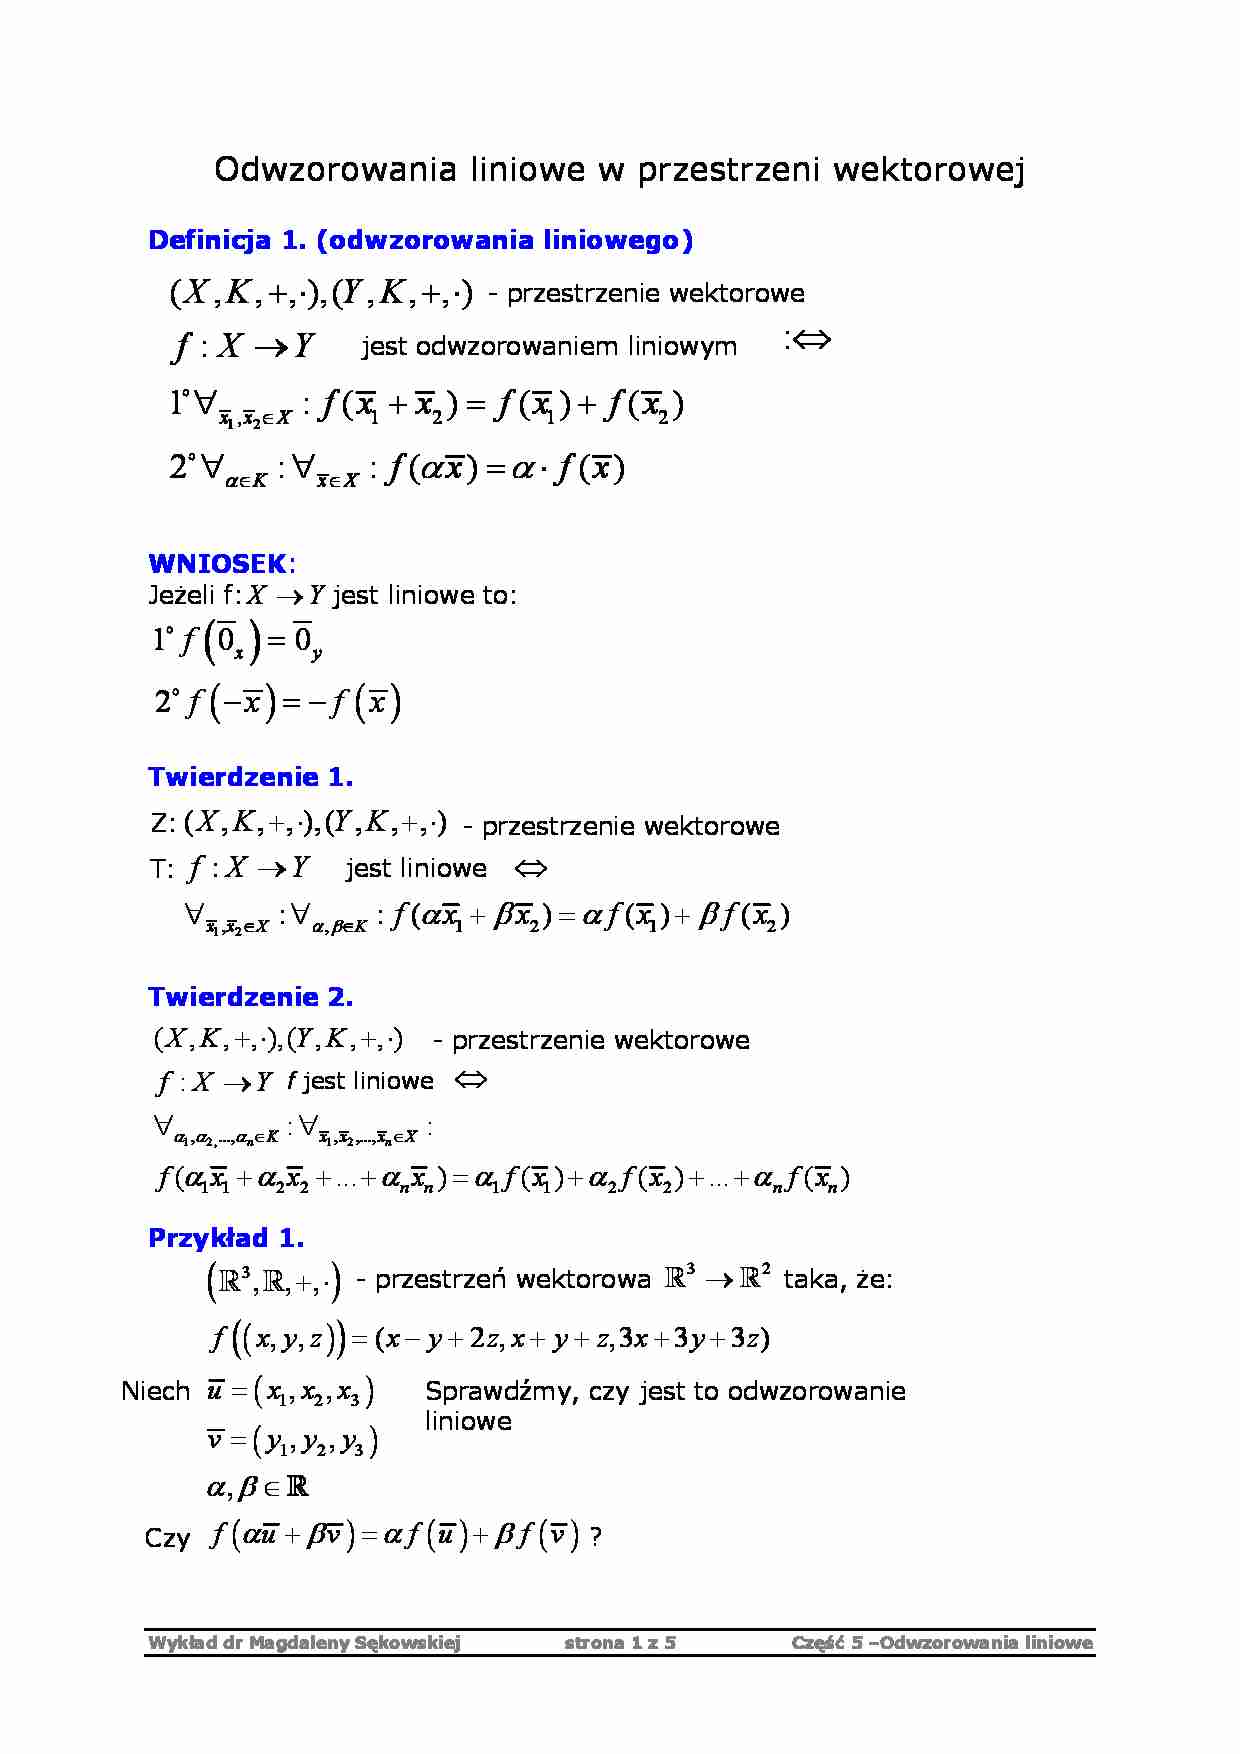 Odwzorowania liniowe - algebra - strona 1